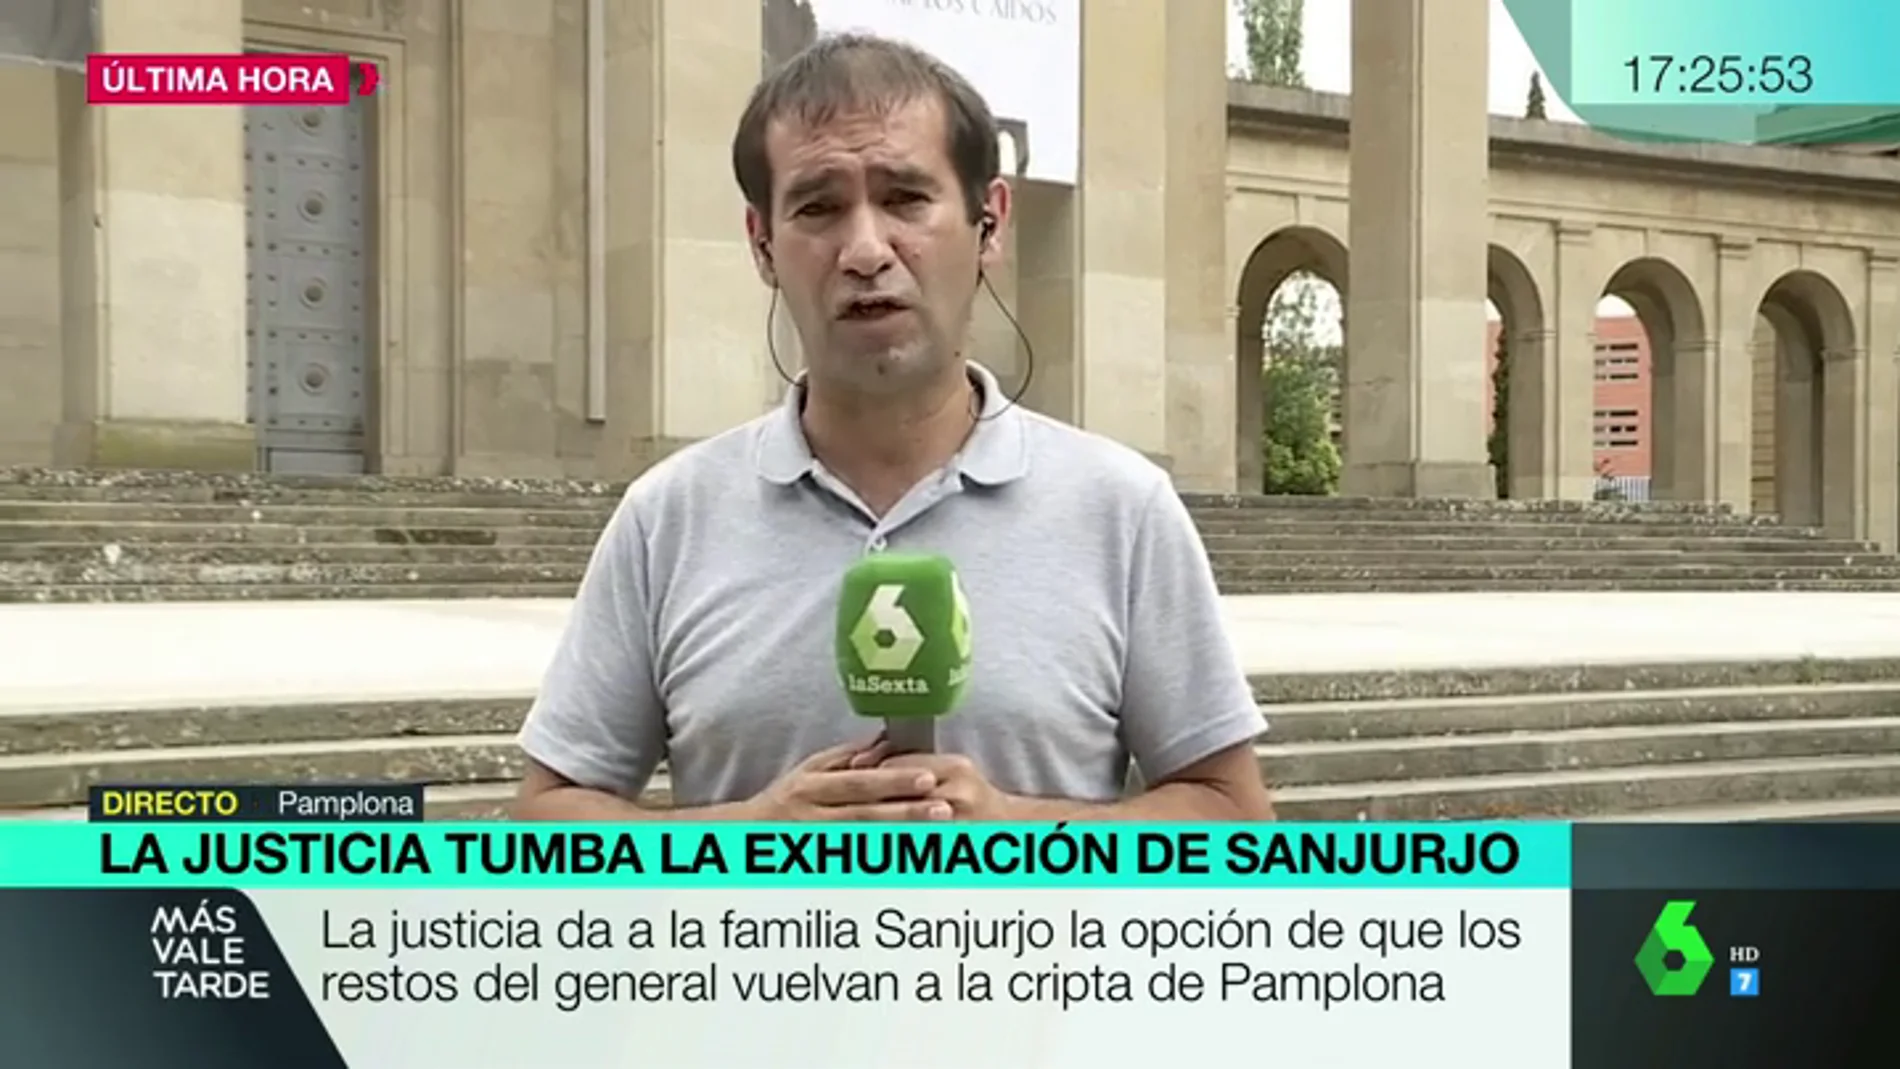 La familia del general Sanjurjo puede devolver sus restos a la cripta de Pamplona.